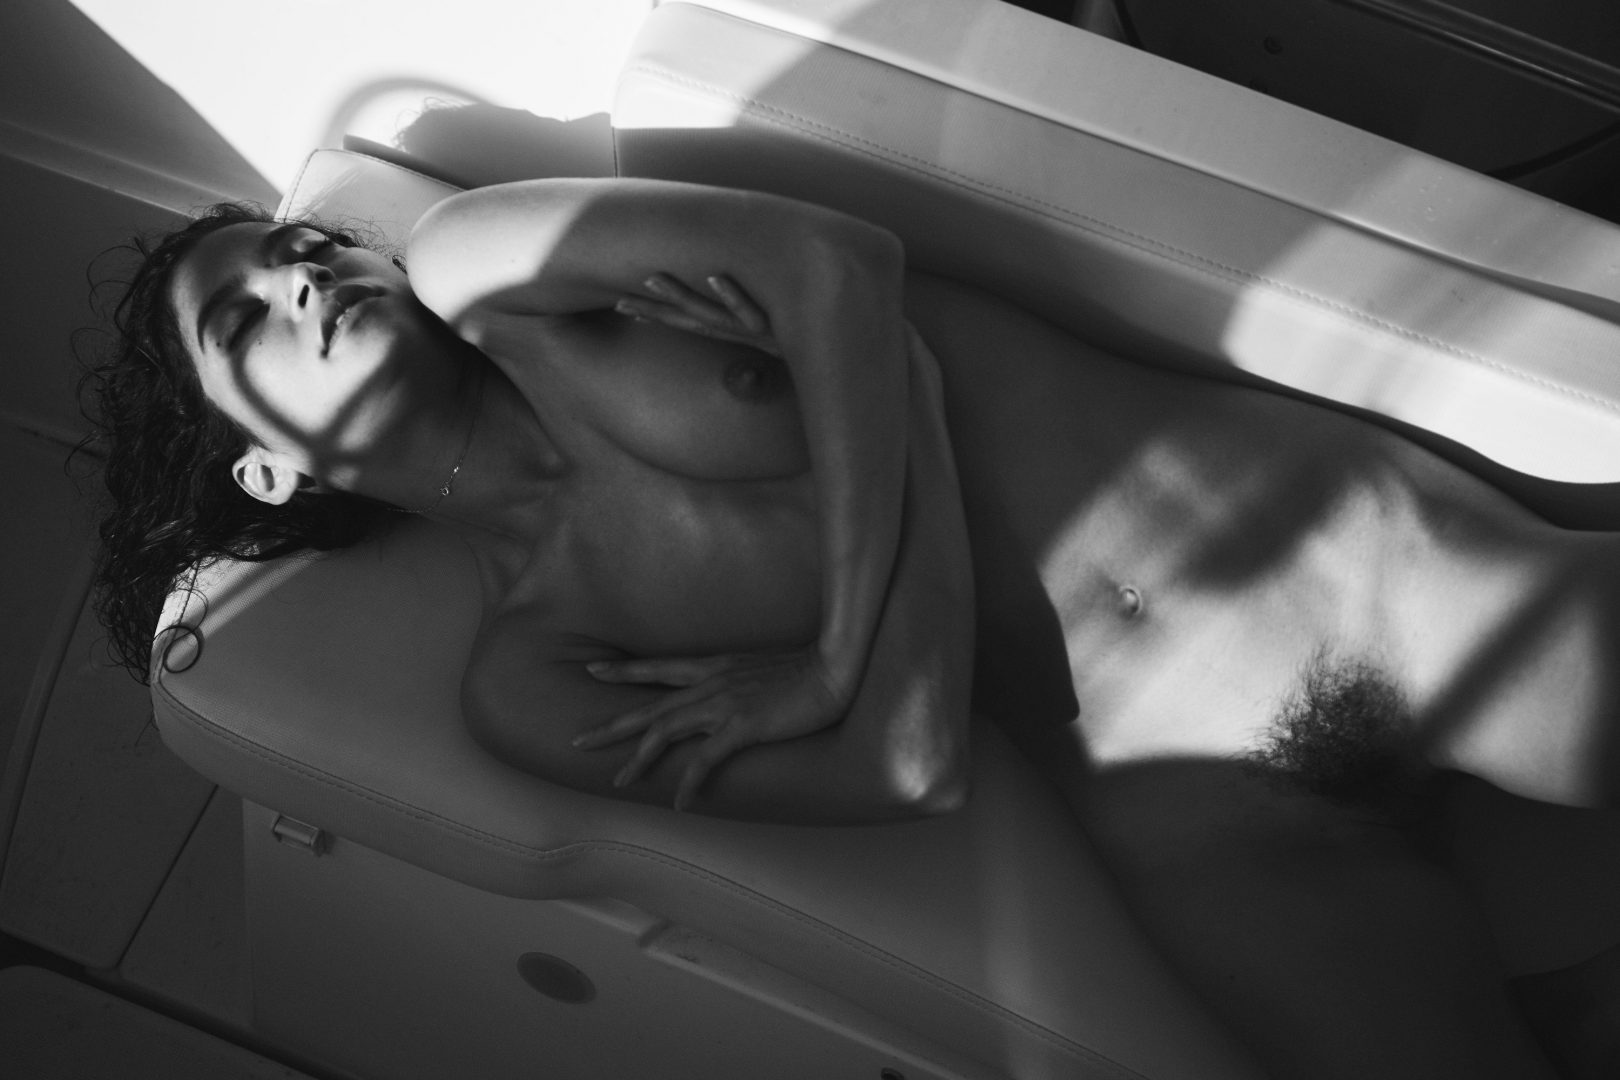 Naked woman on boat by stefan rappo